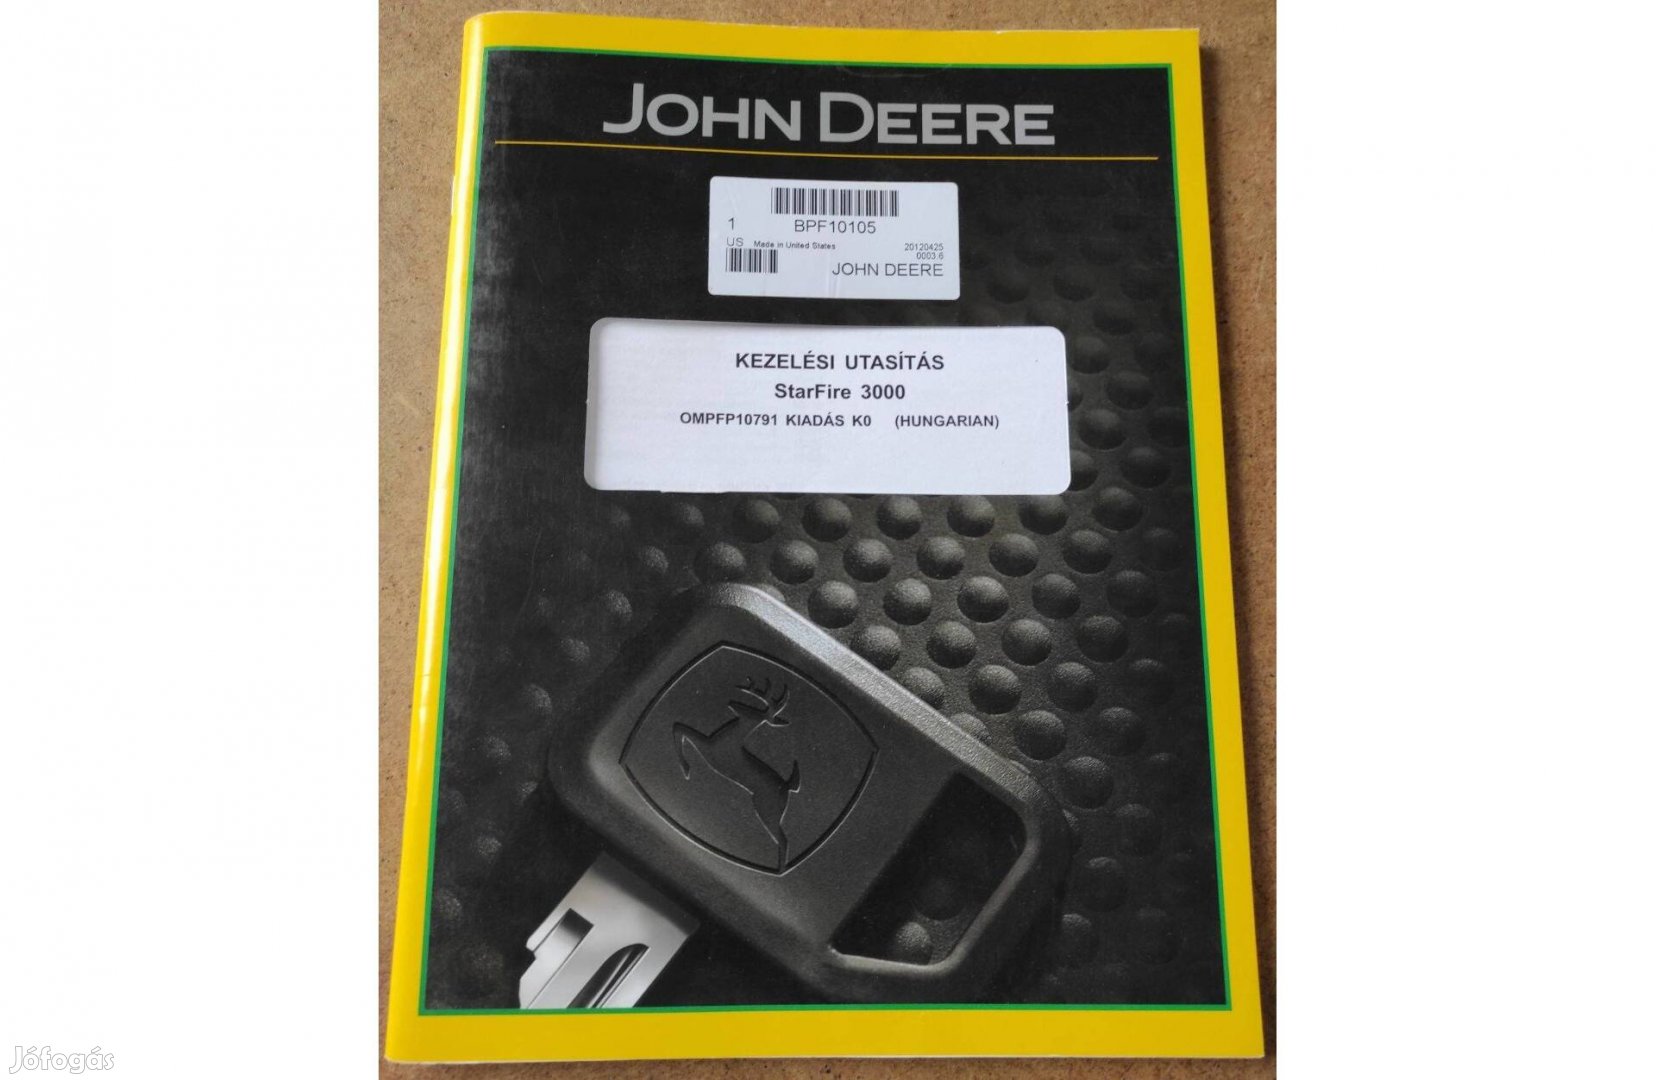 John Deere Starfire 3000 kezelési utasítás